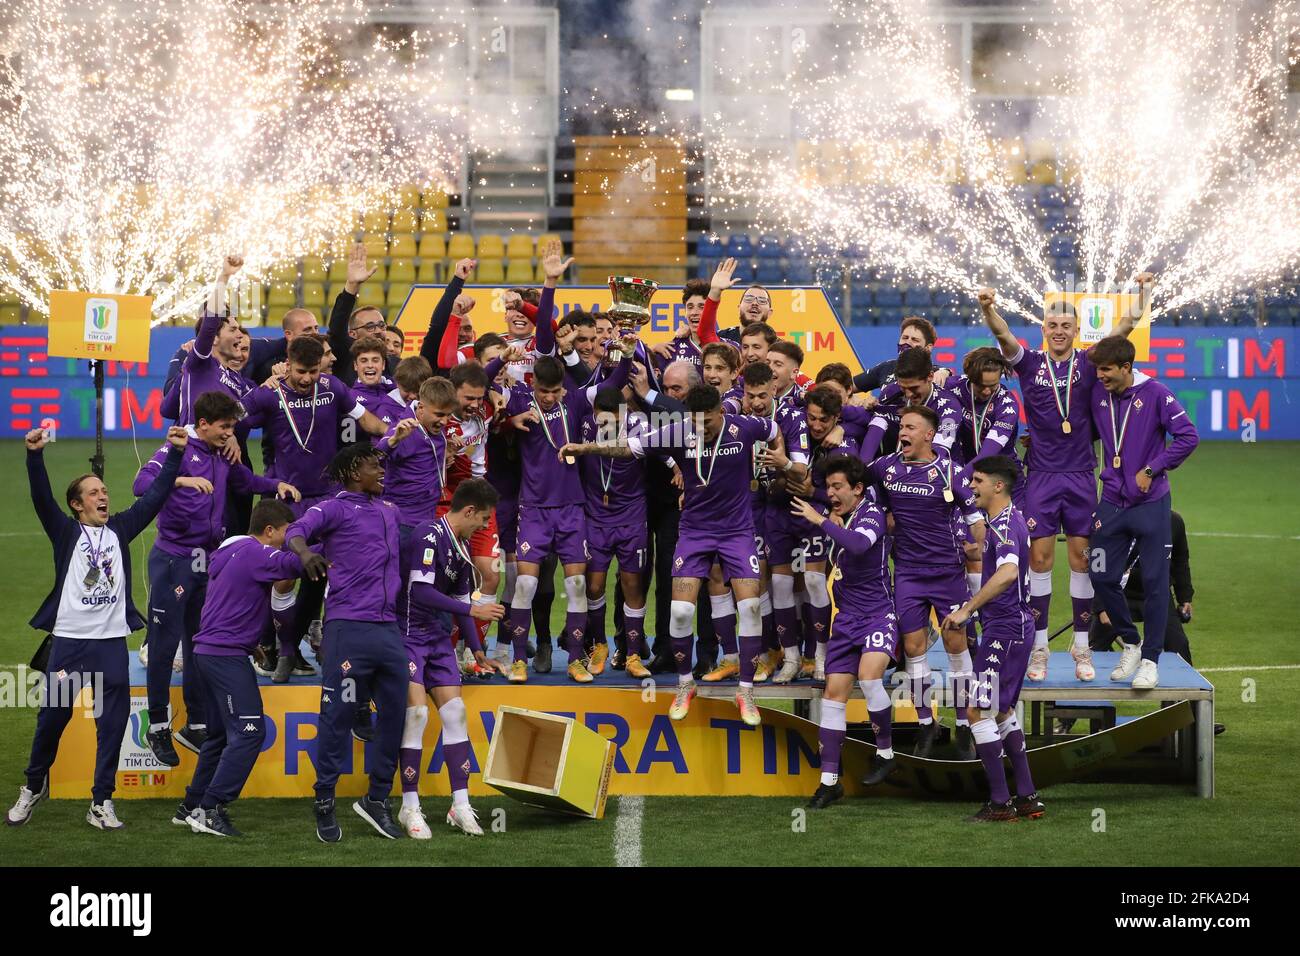 Football, Fiorentina win Coppa Italia Primave